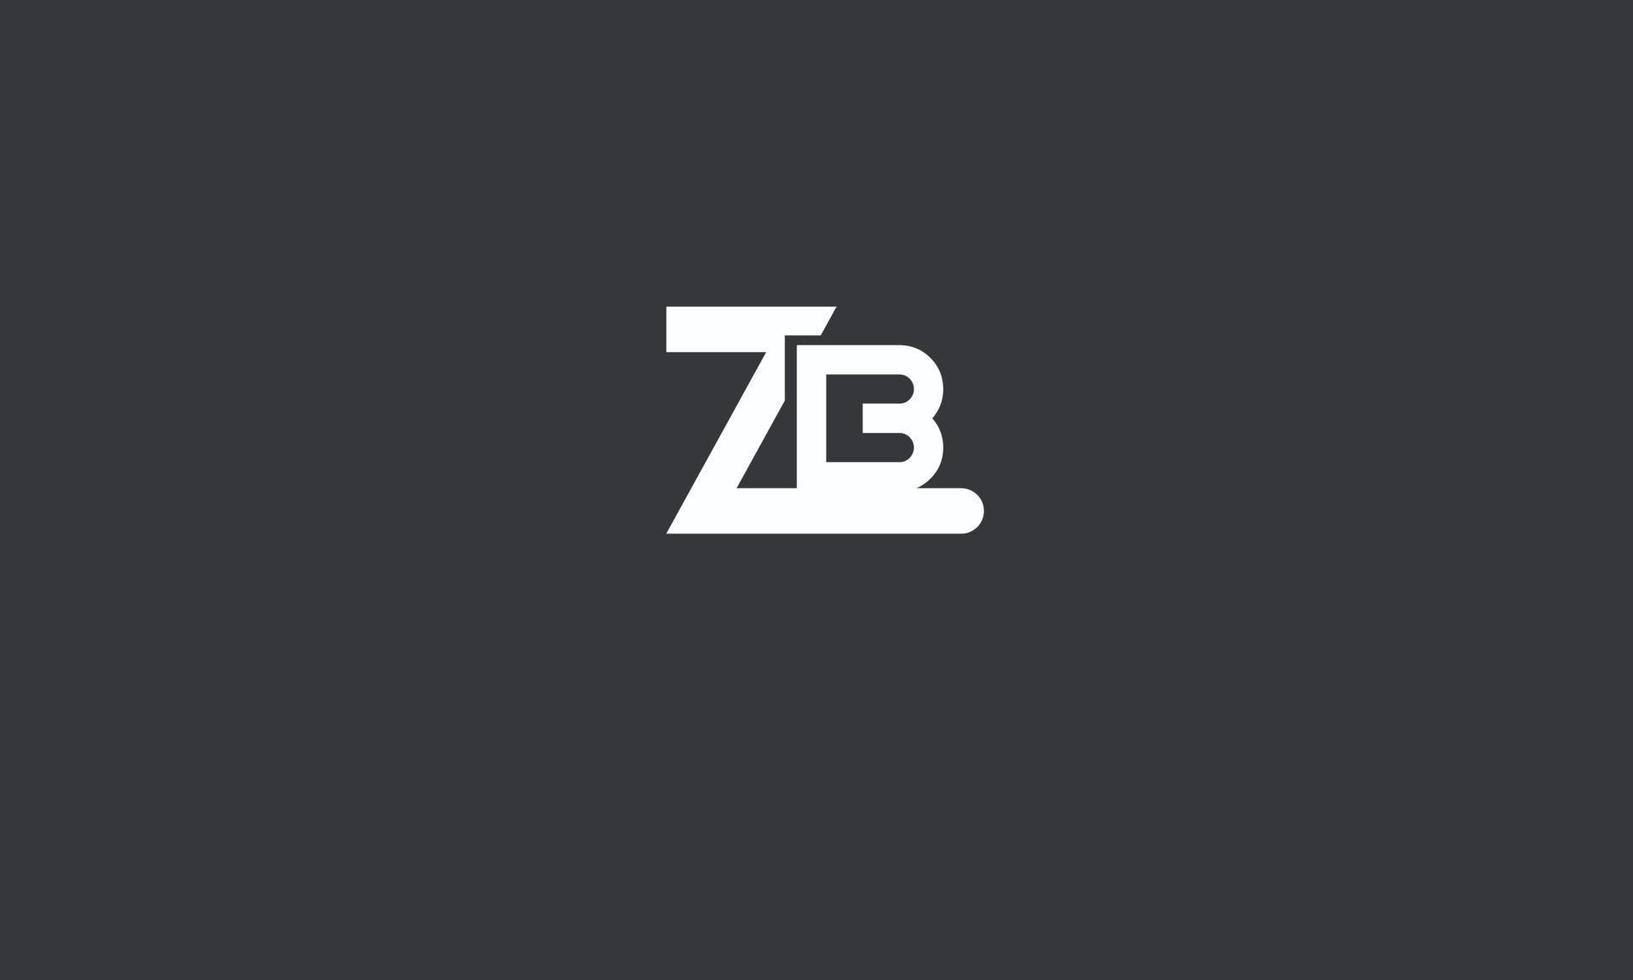 letras del alfabeto iniciales monograma logo zb, bz, z y b vector